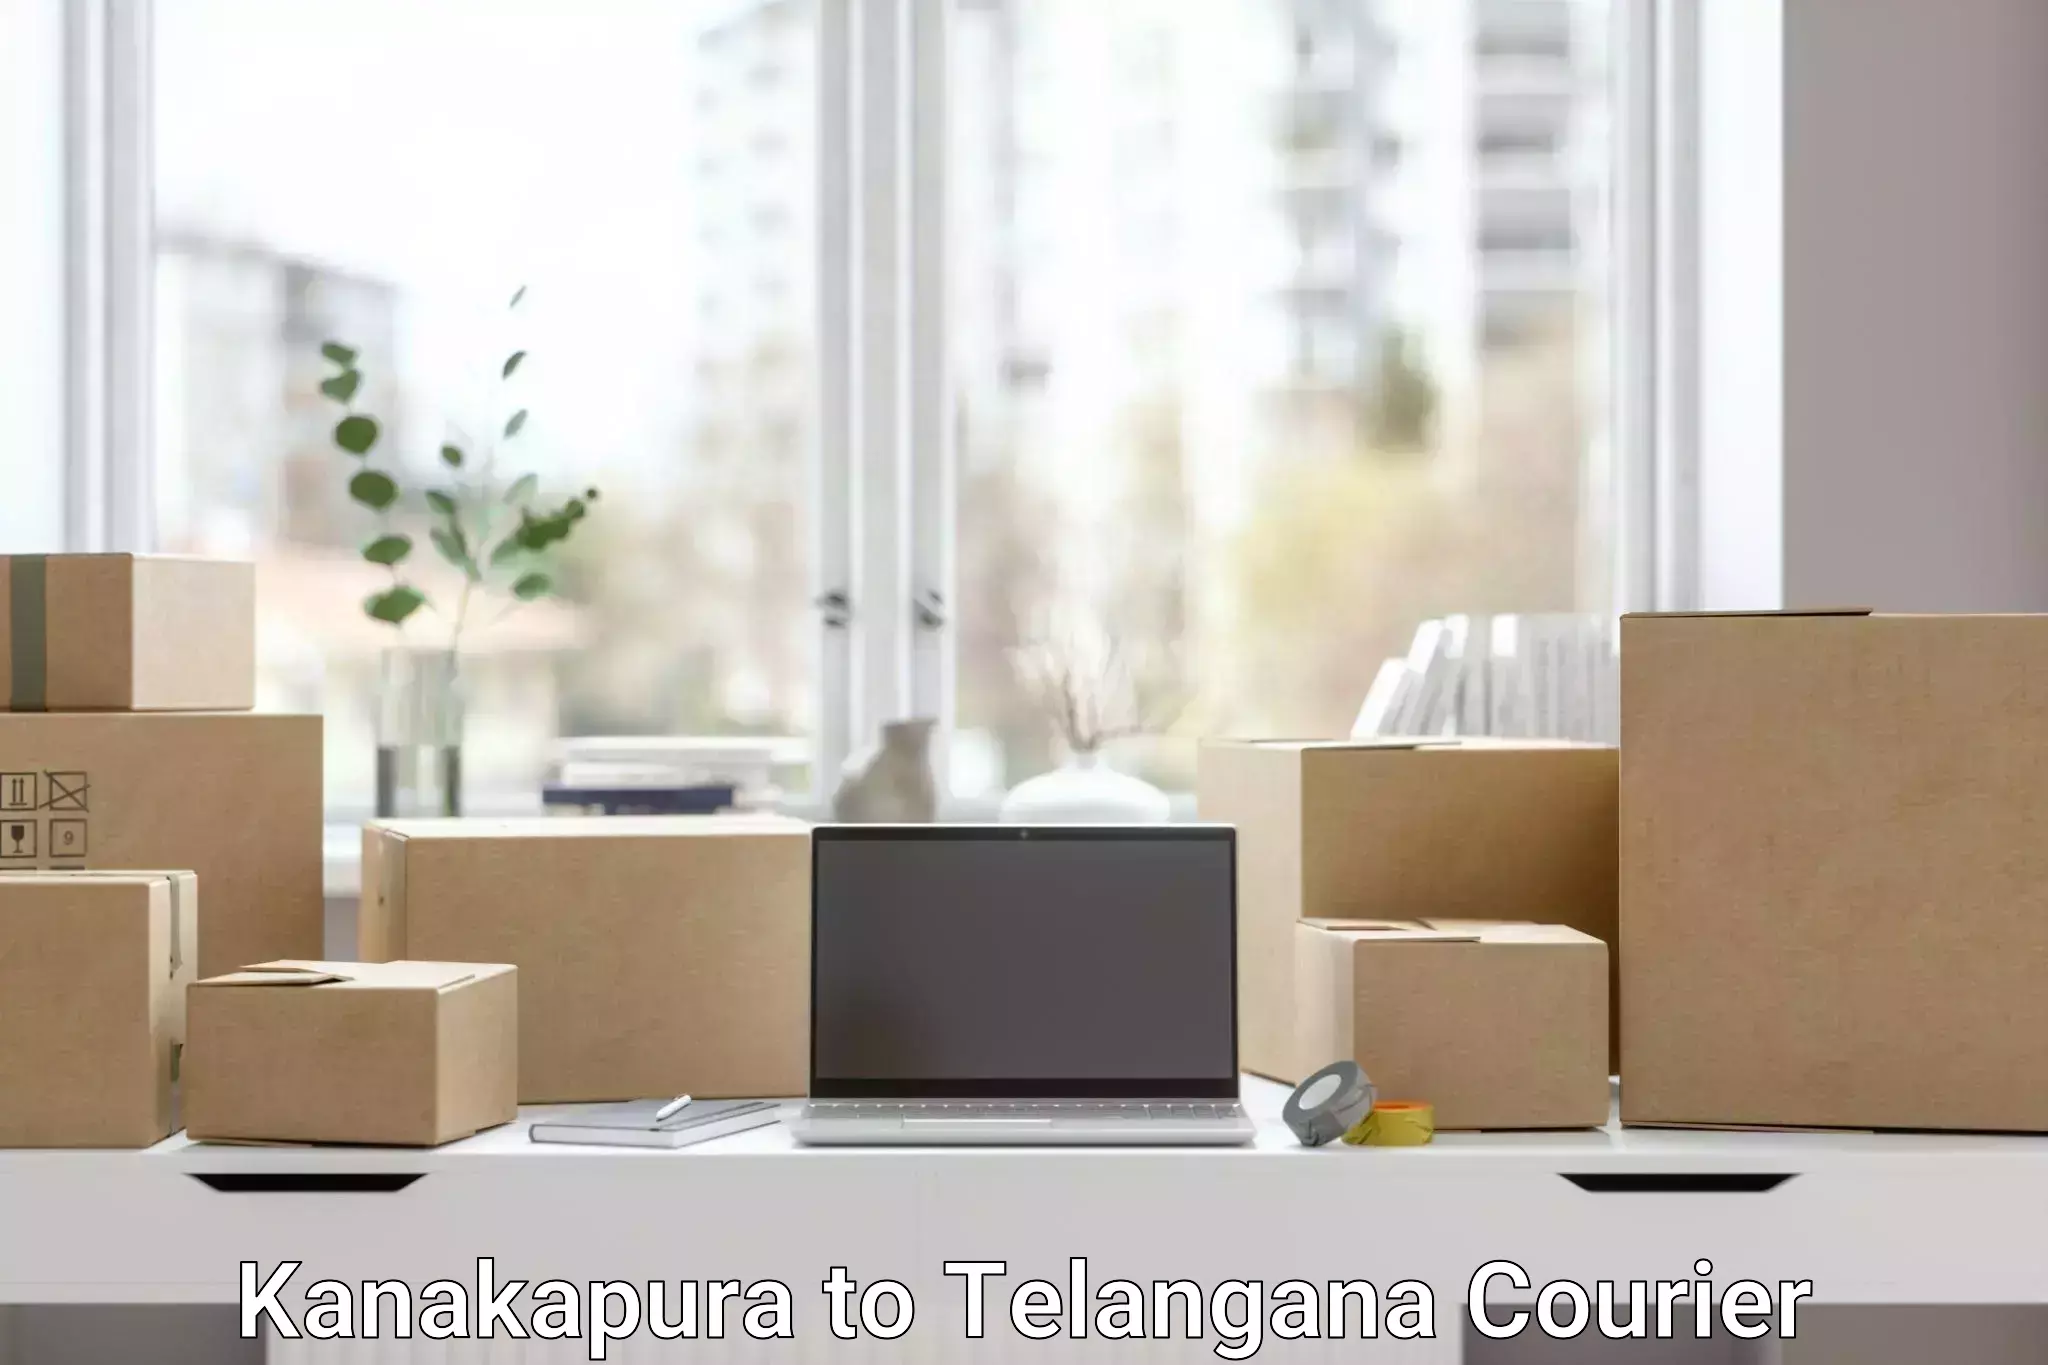 Efficient cargo services Kanakapura to Telangana